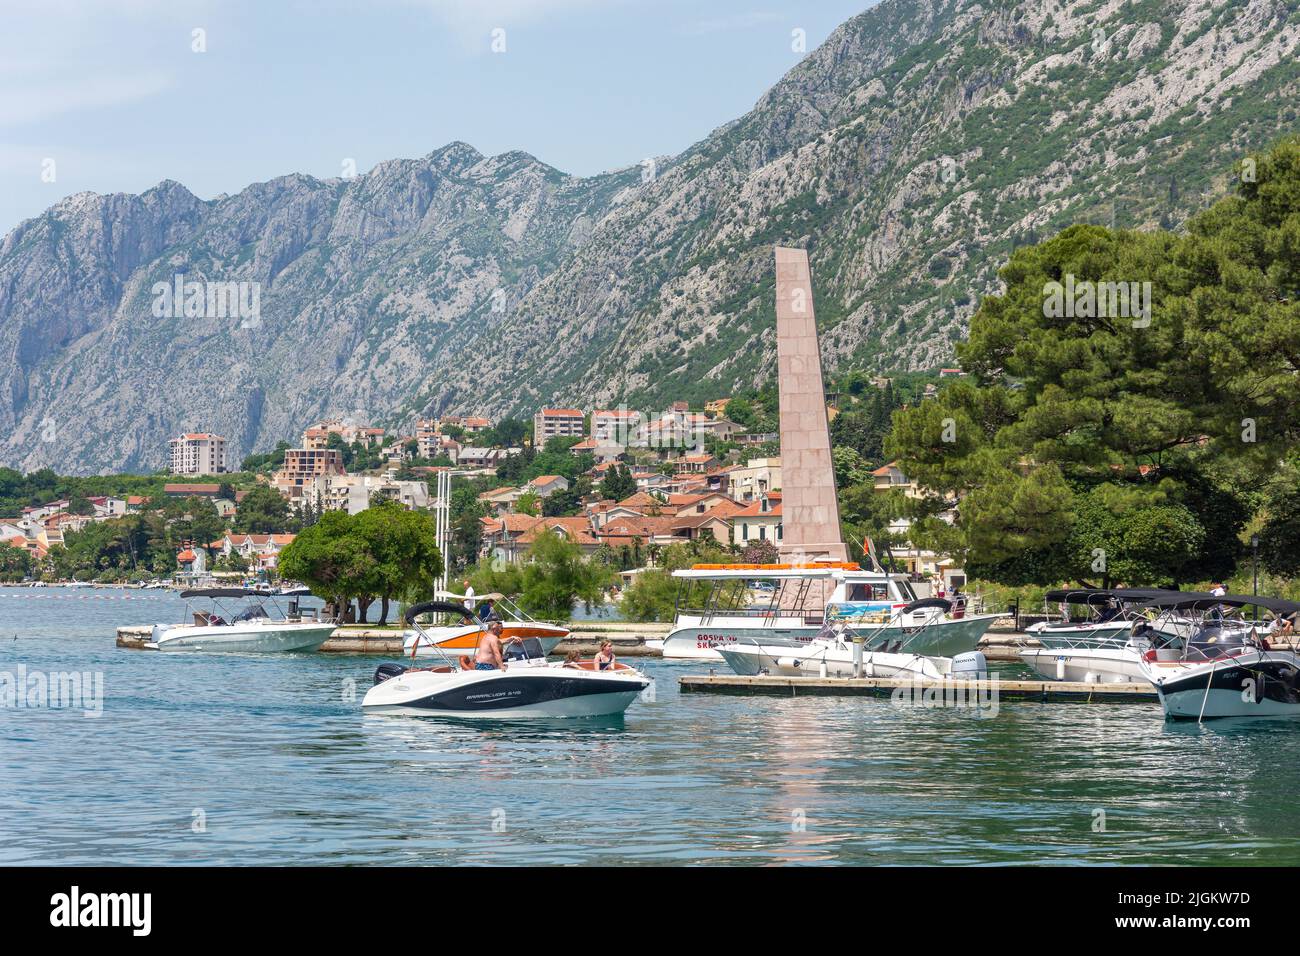 Harbour scene, Bay of Kotor (Boka kotorska), Kotor, Dalmatia, Montenegro Stock Photo